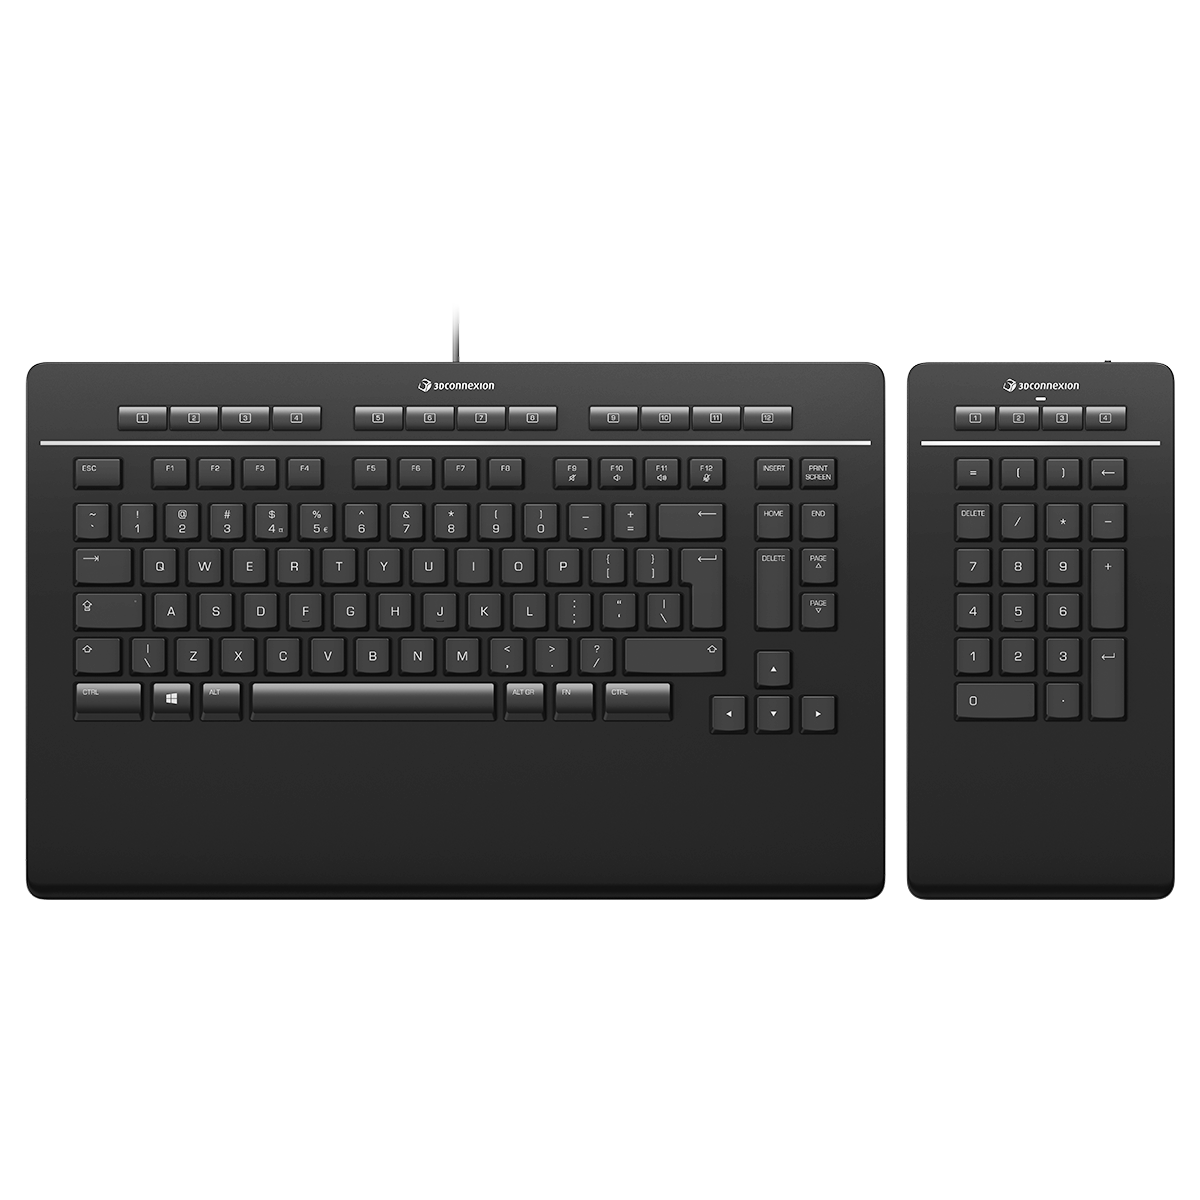 Überprüfen Sie die Verbindung zwischen der Tastatur und dem Computer.
Stellen Sie sicher, dass die Tastatur eingeschaltet ist und über ausreichend Batterieleistung verfügt.